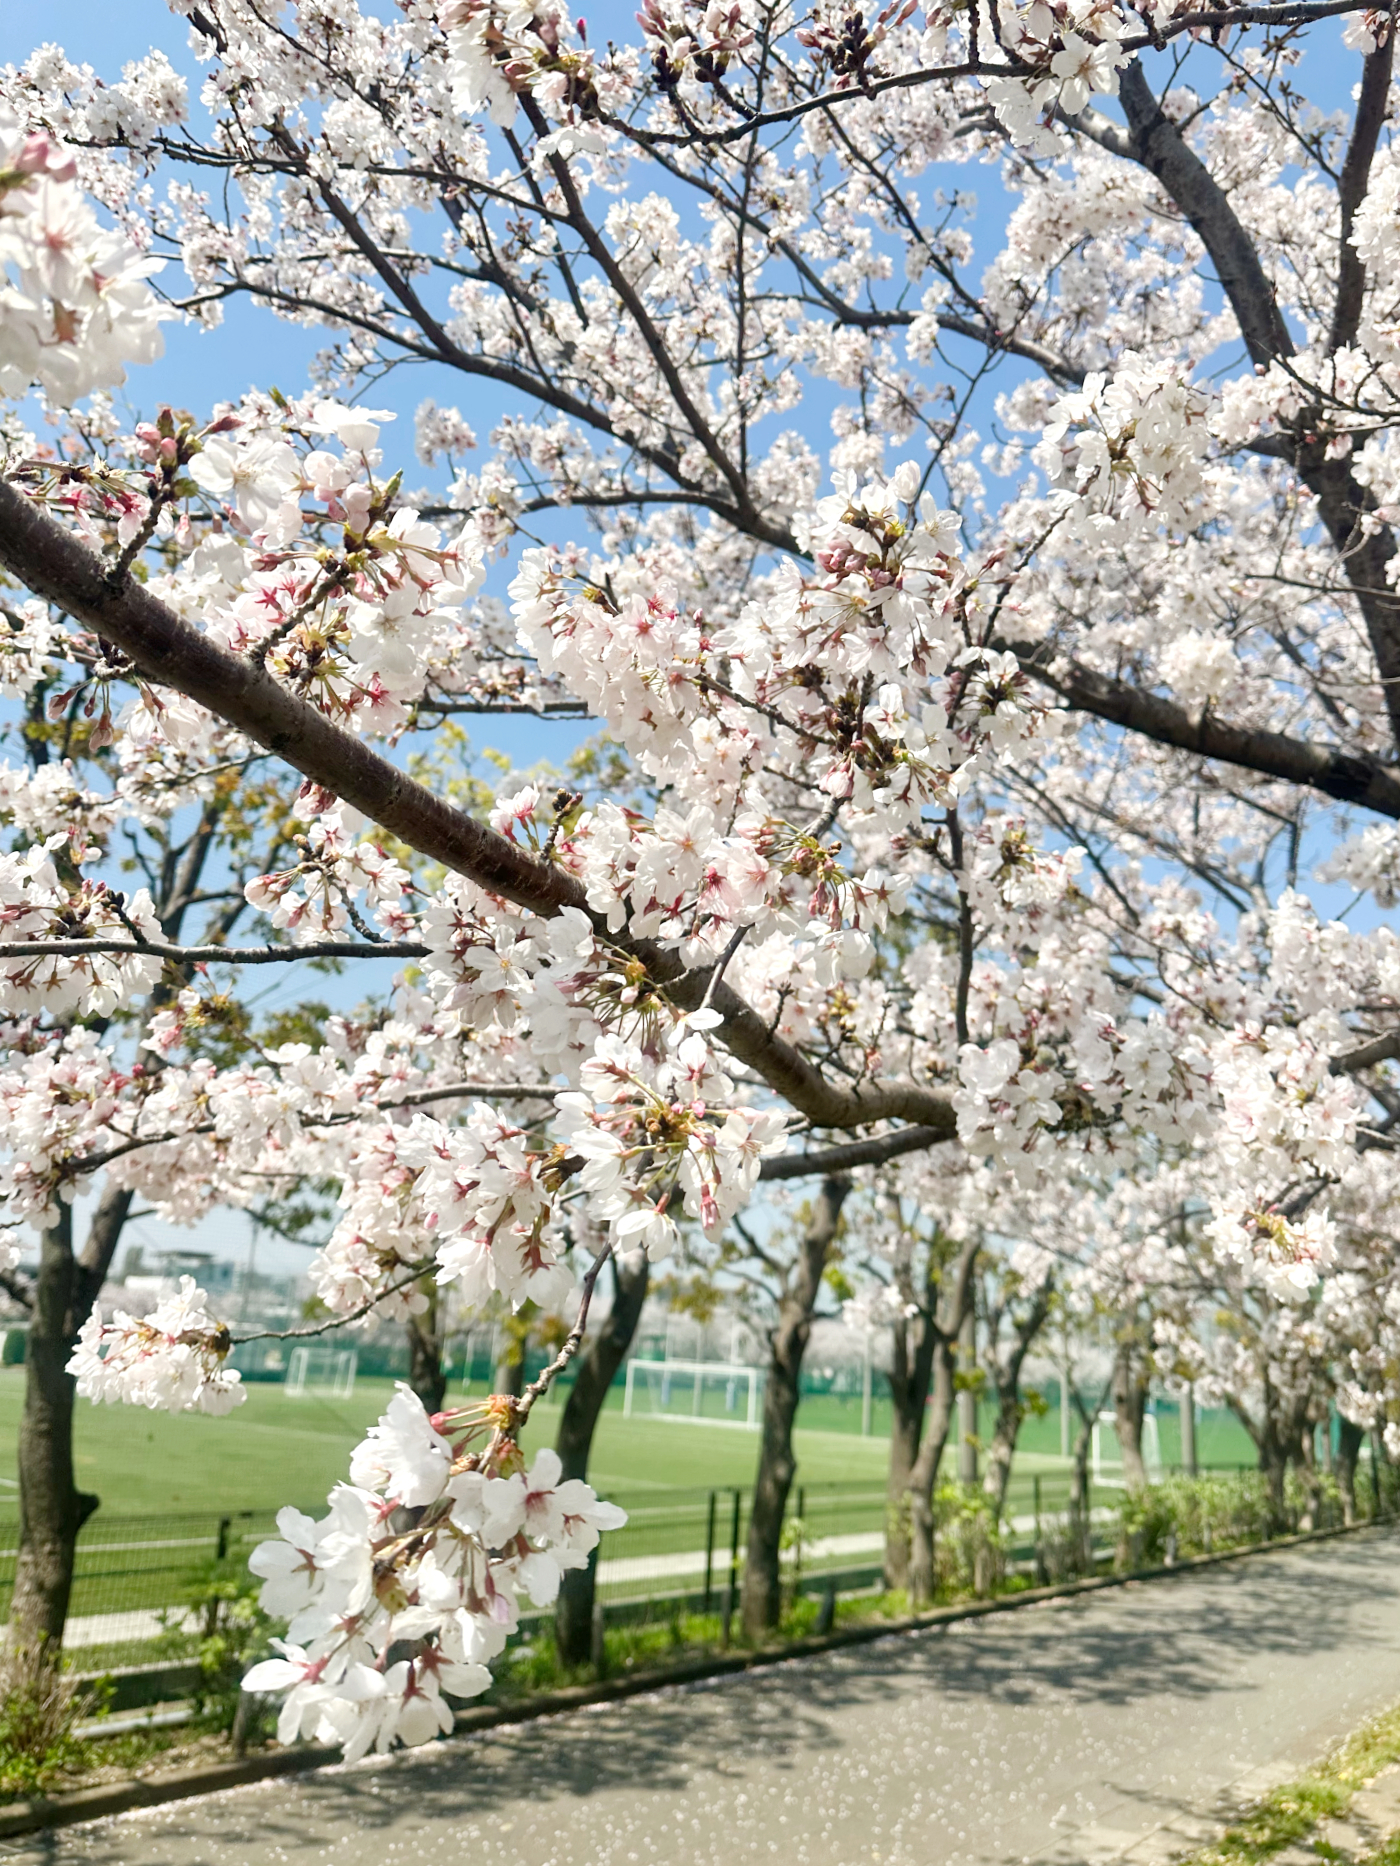 通路側の桜の花道もすてきです